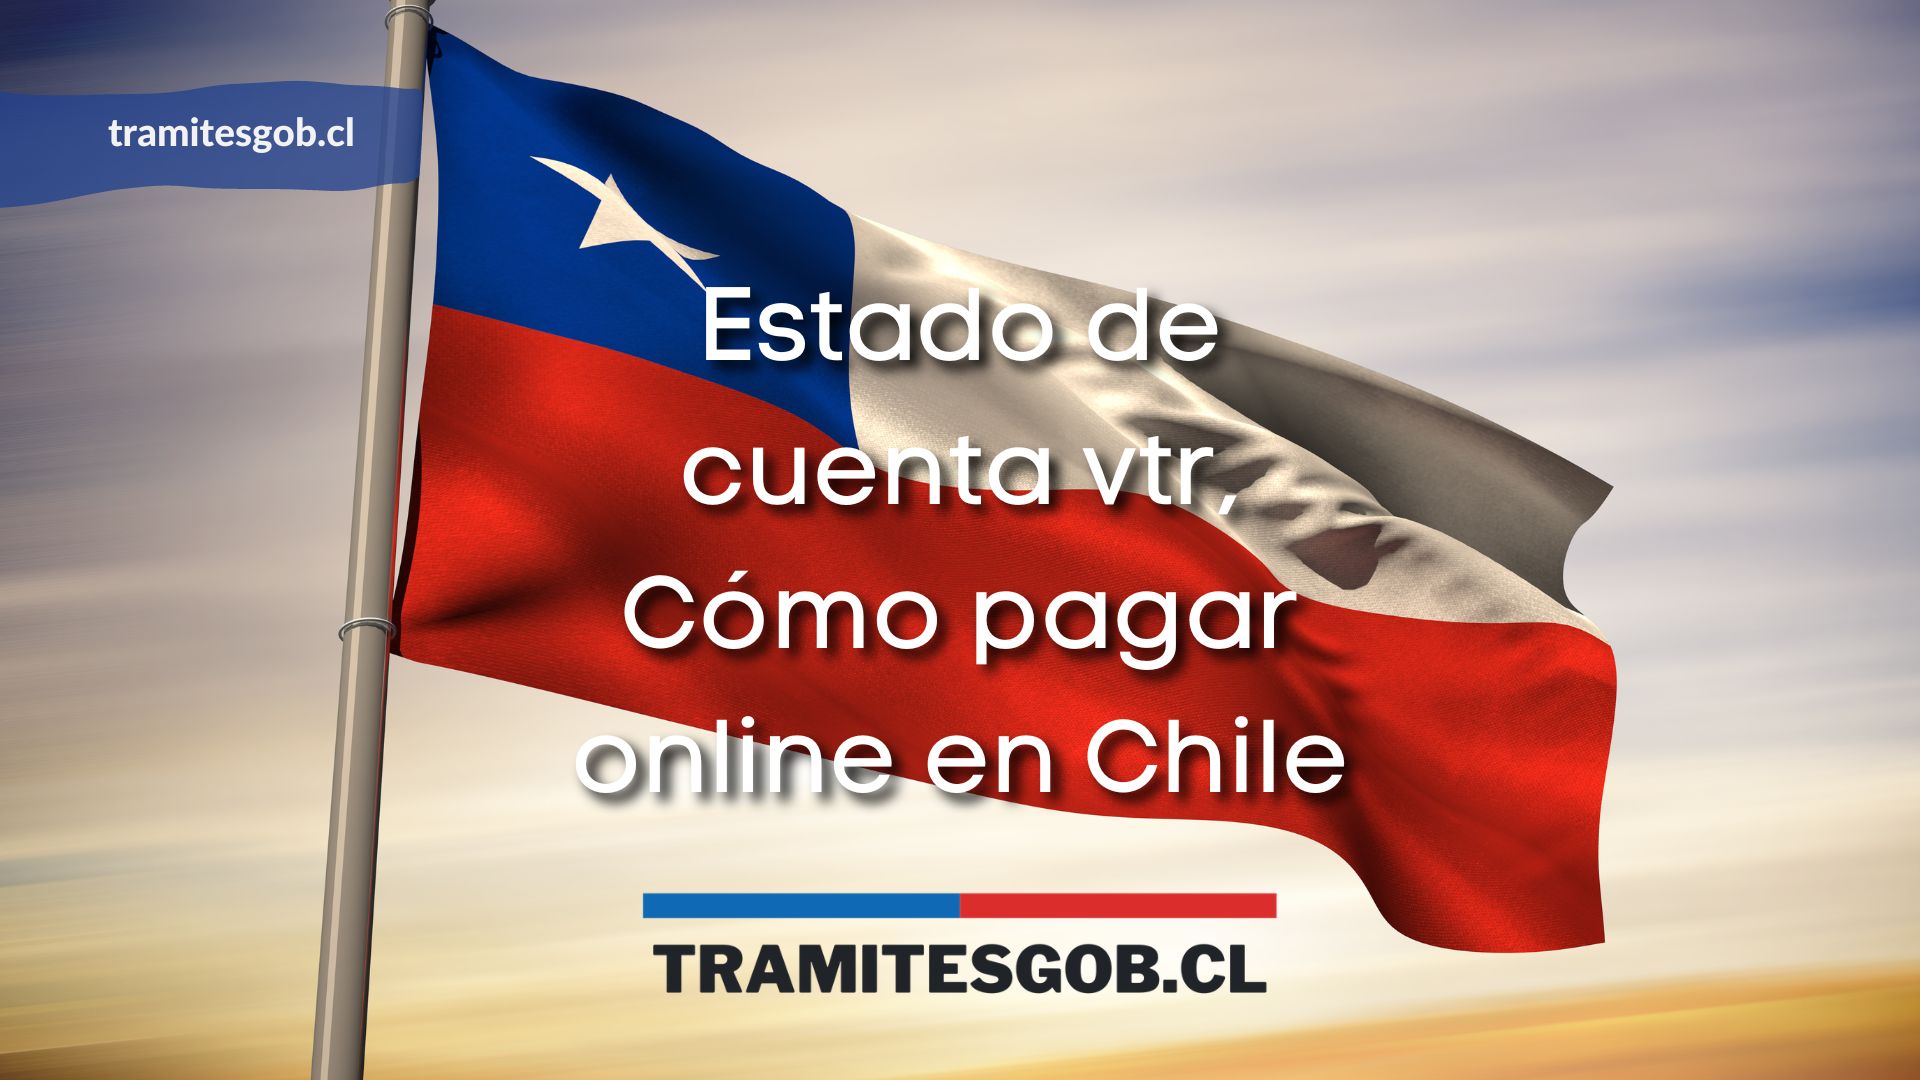 Estado de cuenta vtr, Cómo pagar online en Chile